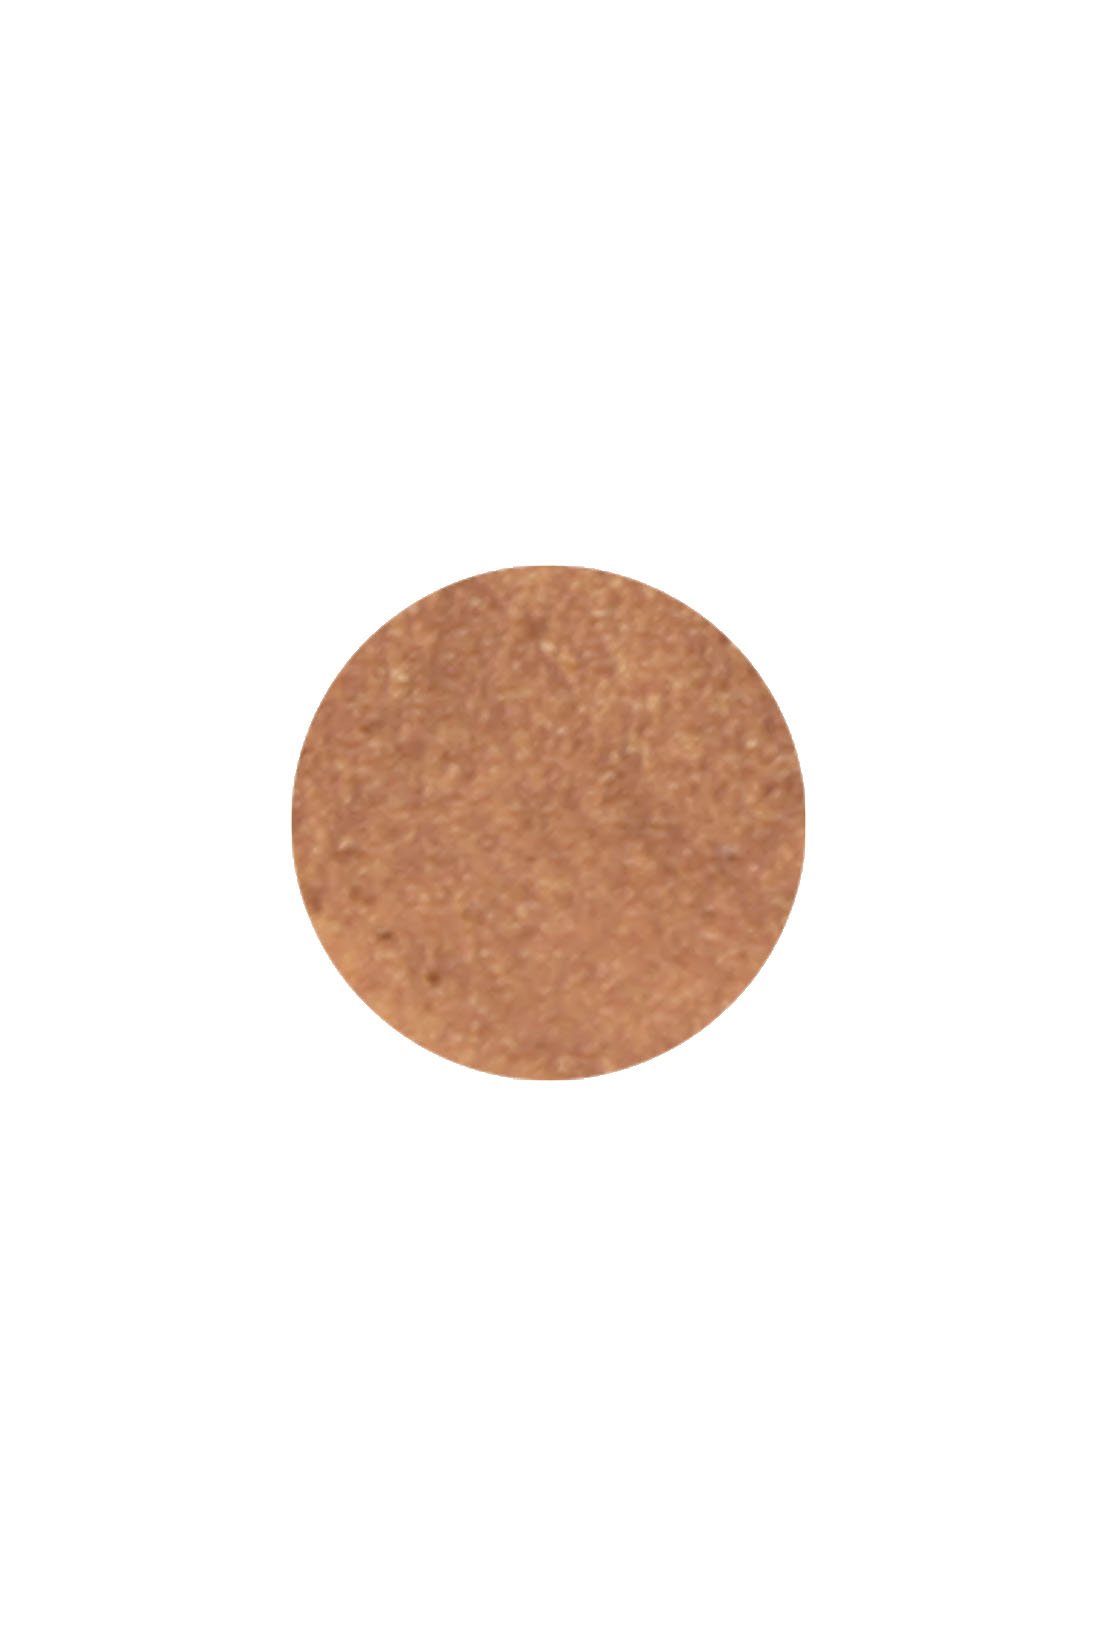  Punto di Eyeliner color arancio lucido a lunga durata (impermeabile)